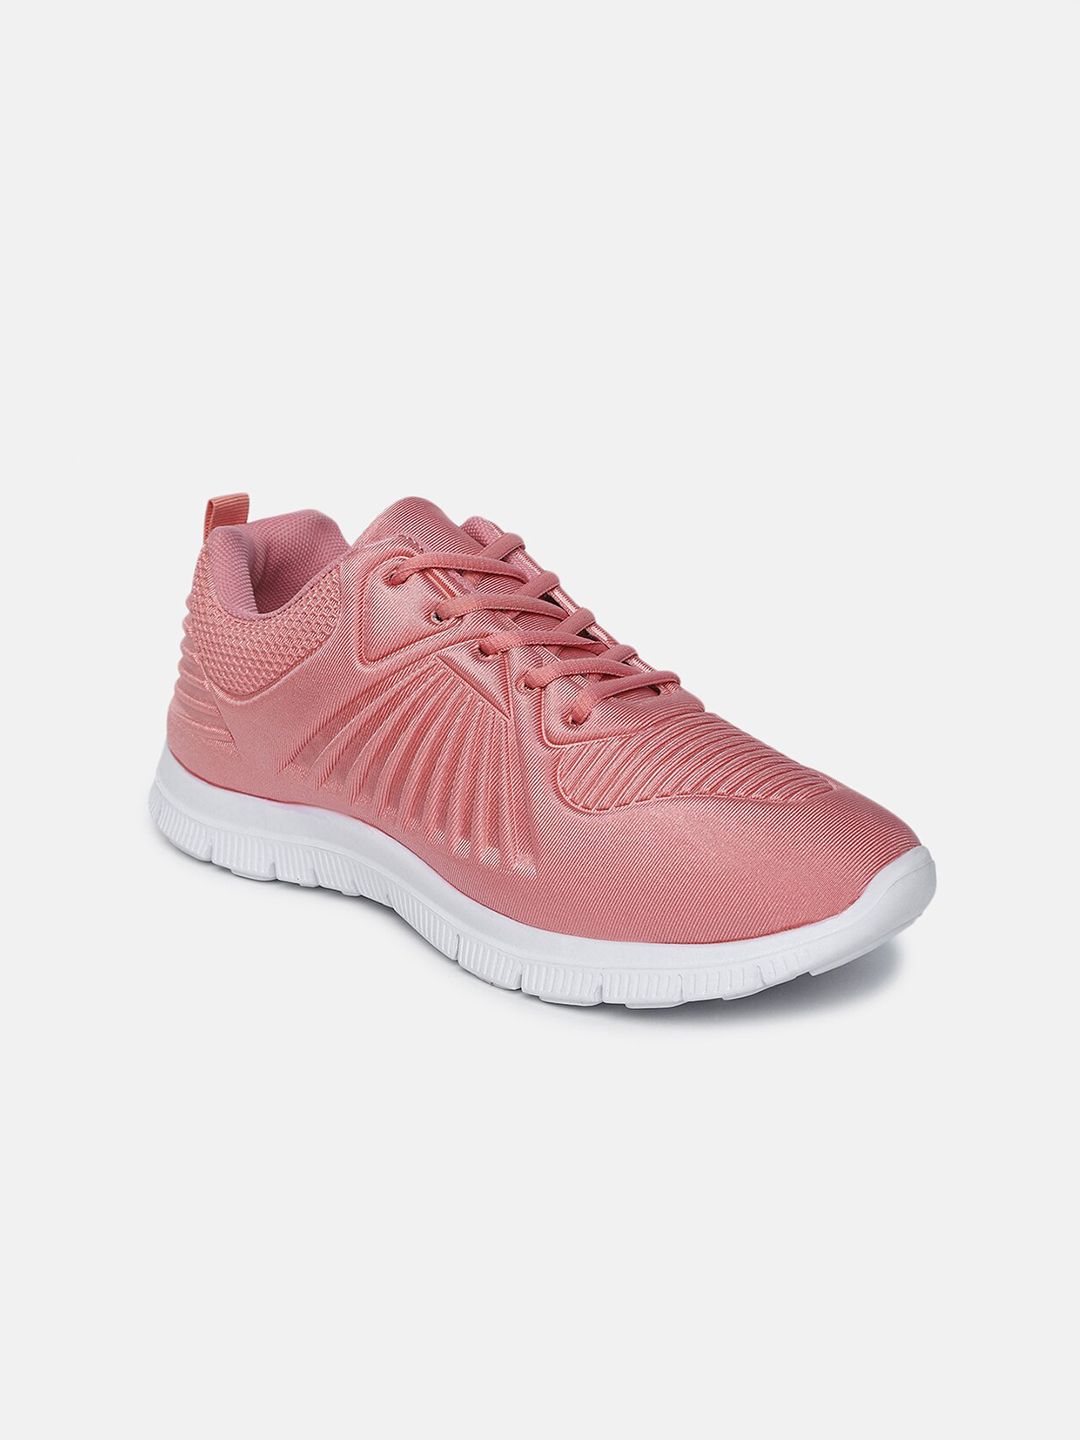 shoexpress Women Pink & White Textured Textile Regular Running Shoe Price in India